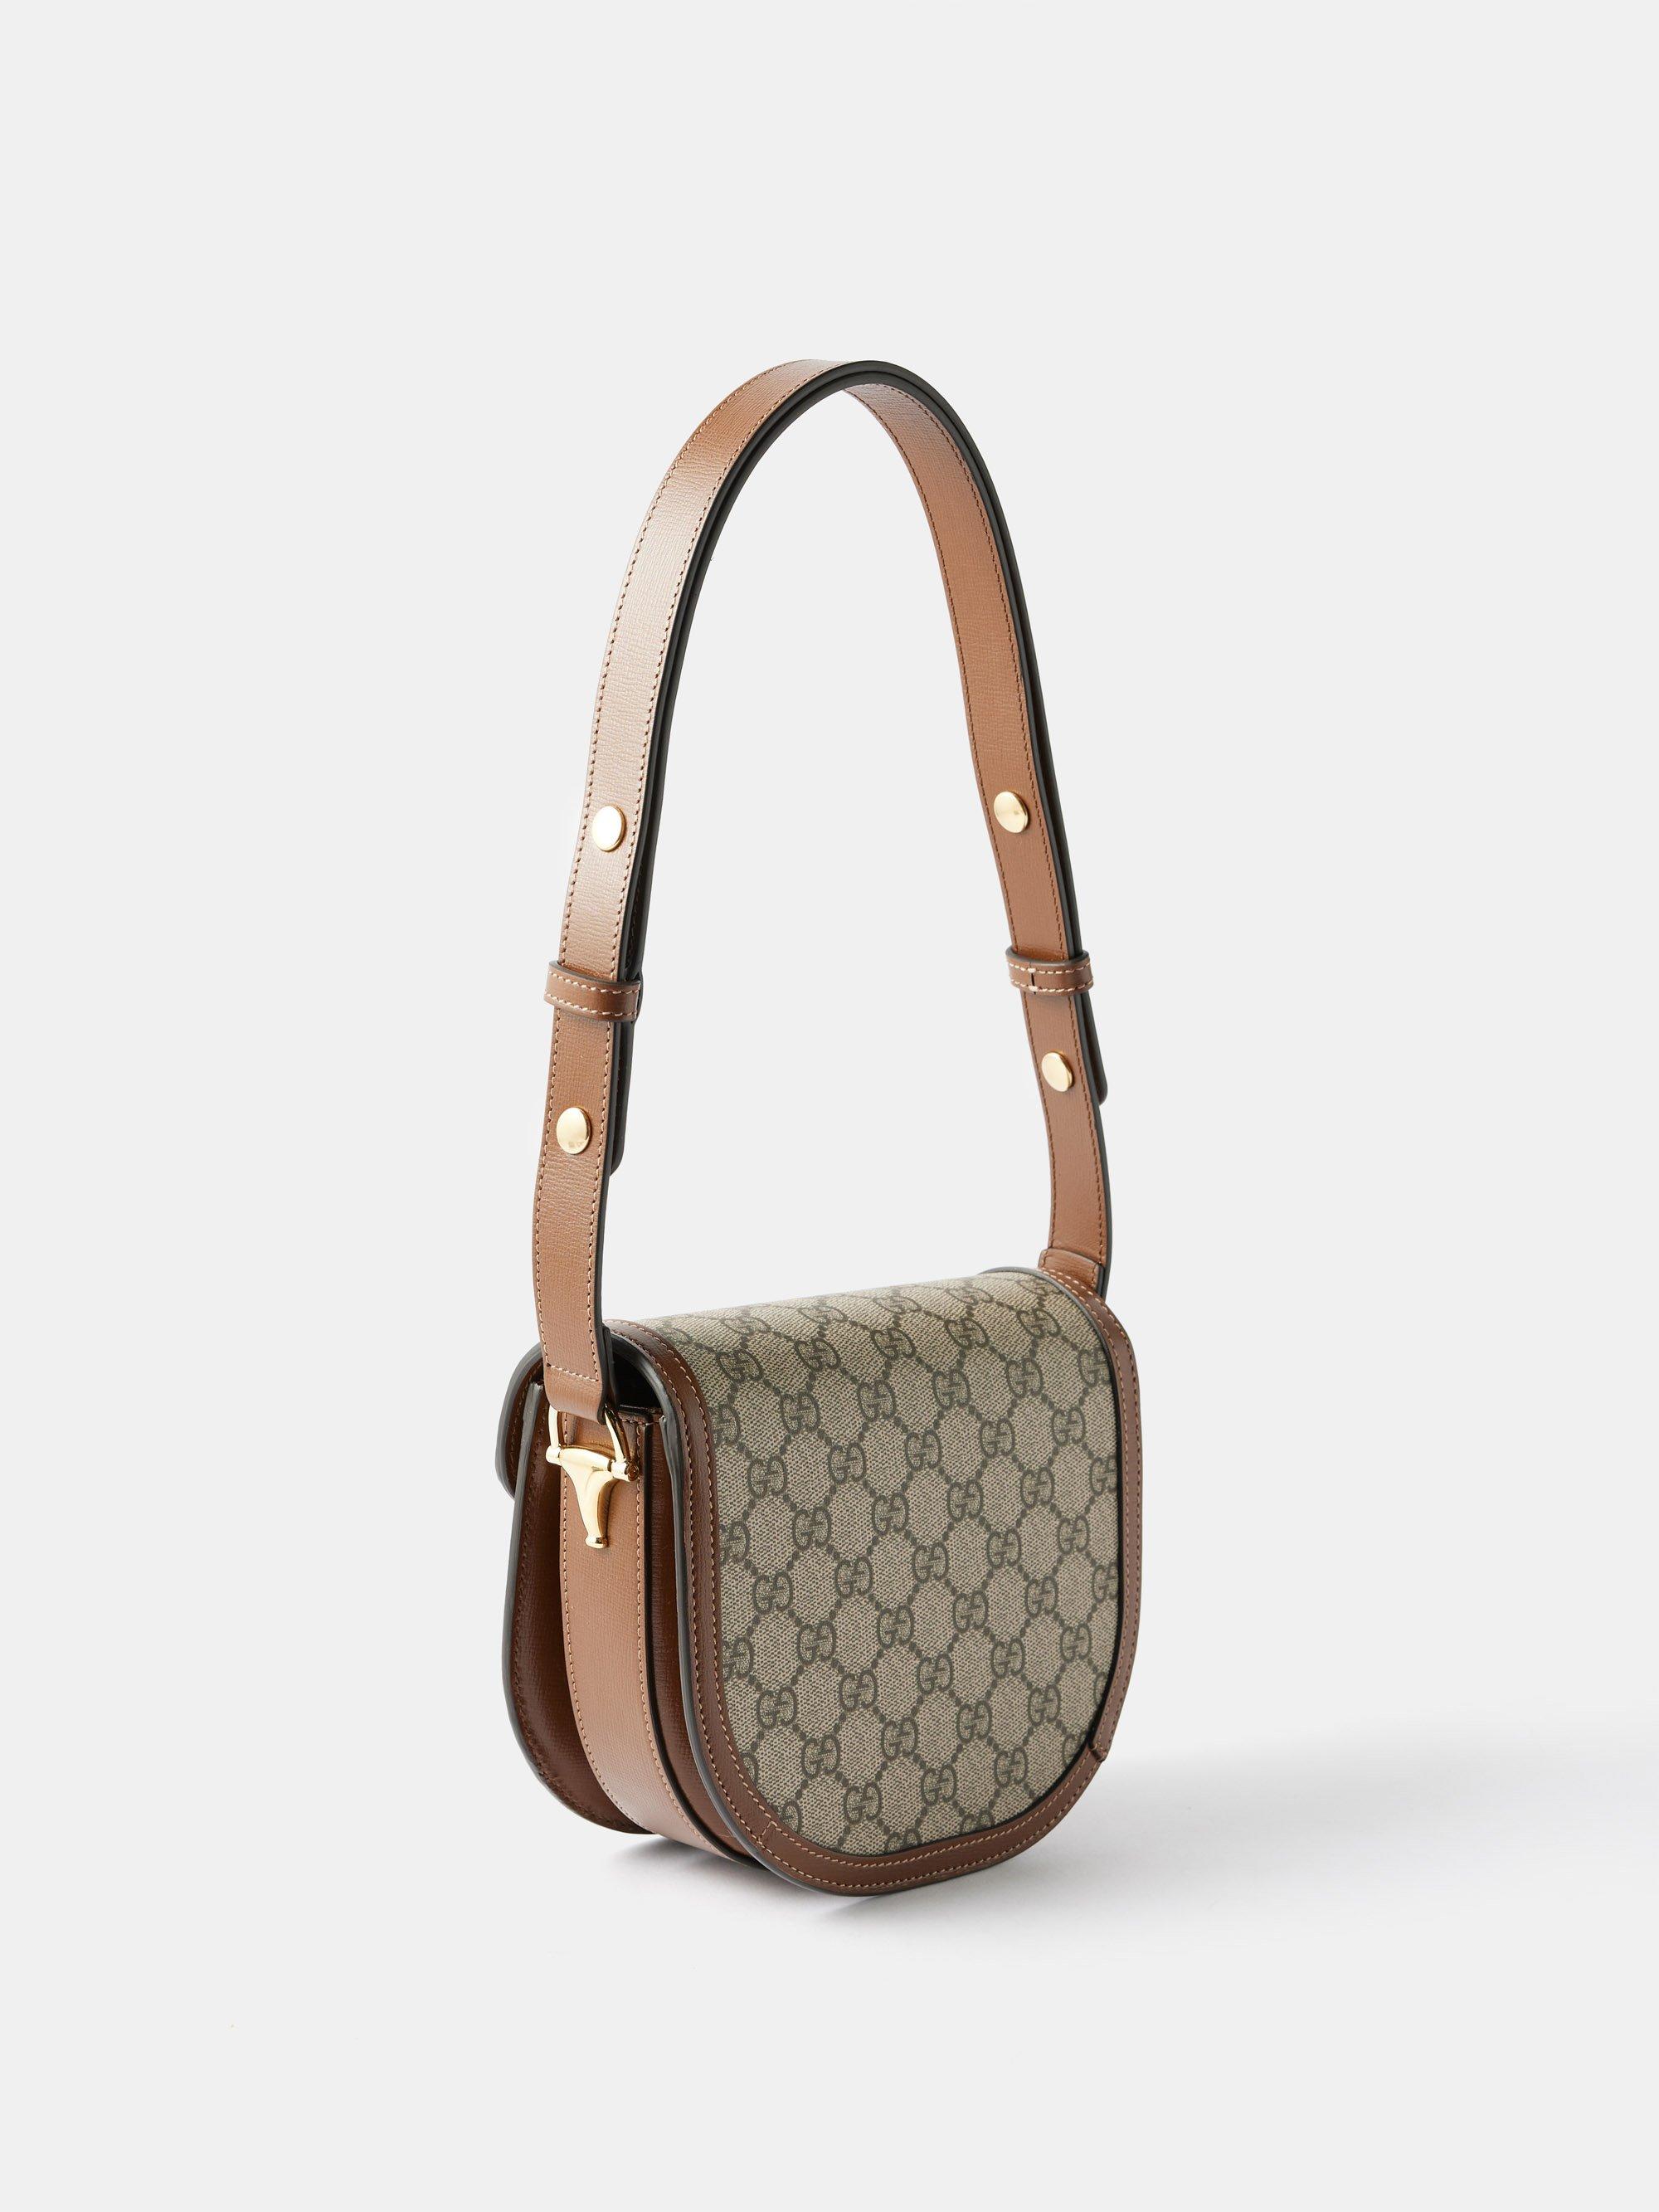 Gucci Gg Supreme Canvas And Leather Mini Cross-body Bag - Beige Multi